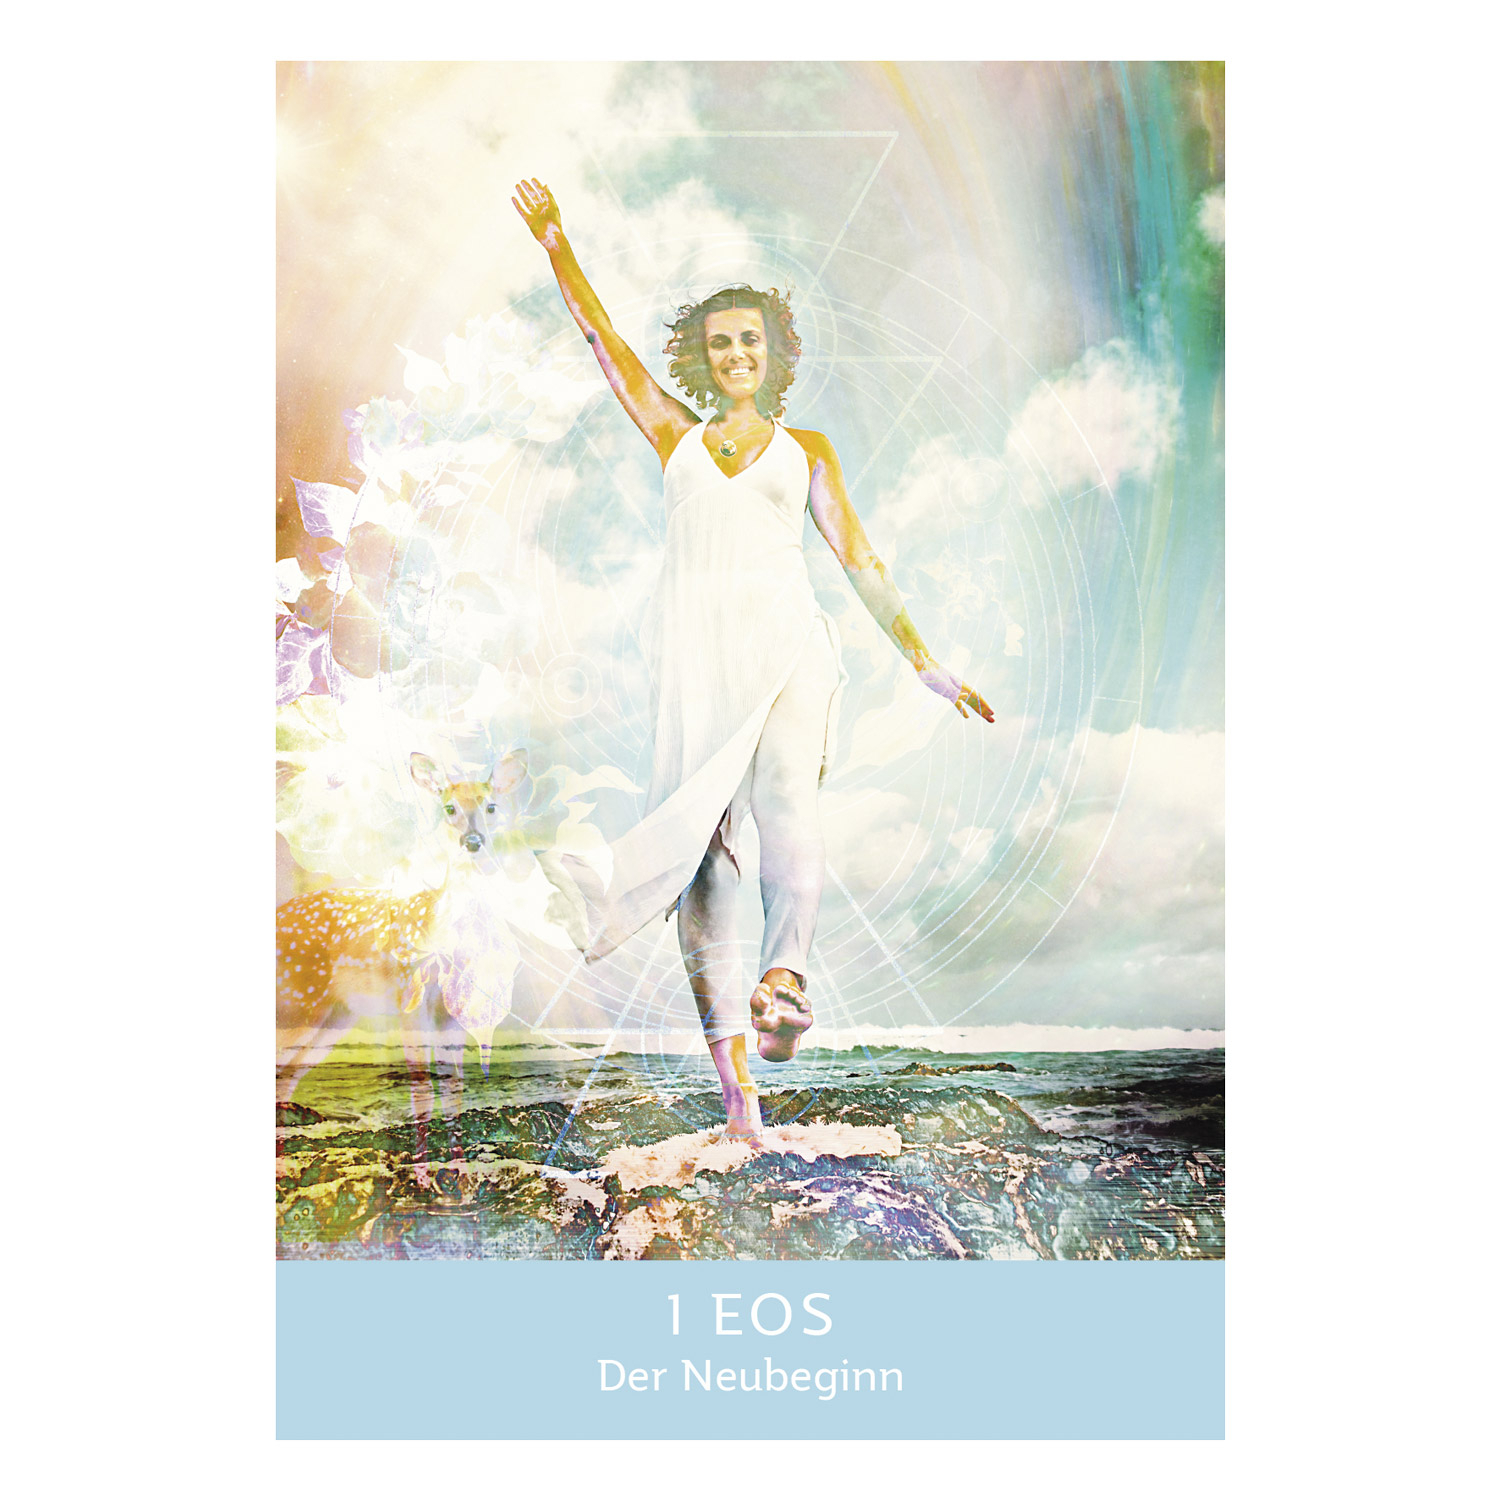 Die Magie der Göttinnen (Kartenset), Produktbild 3